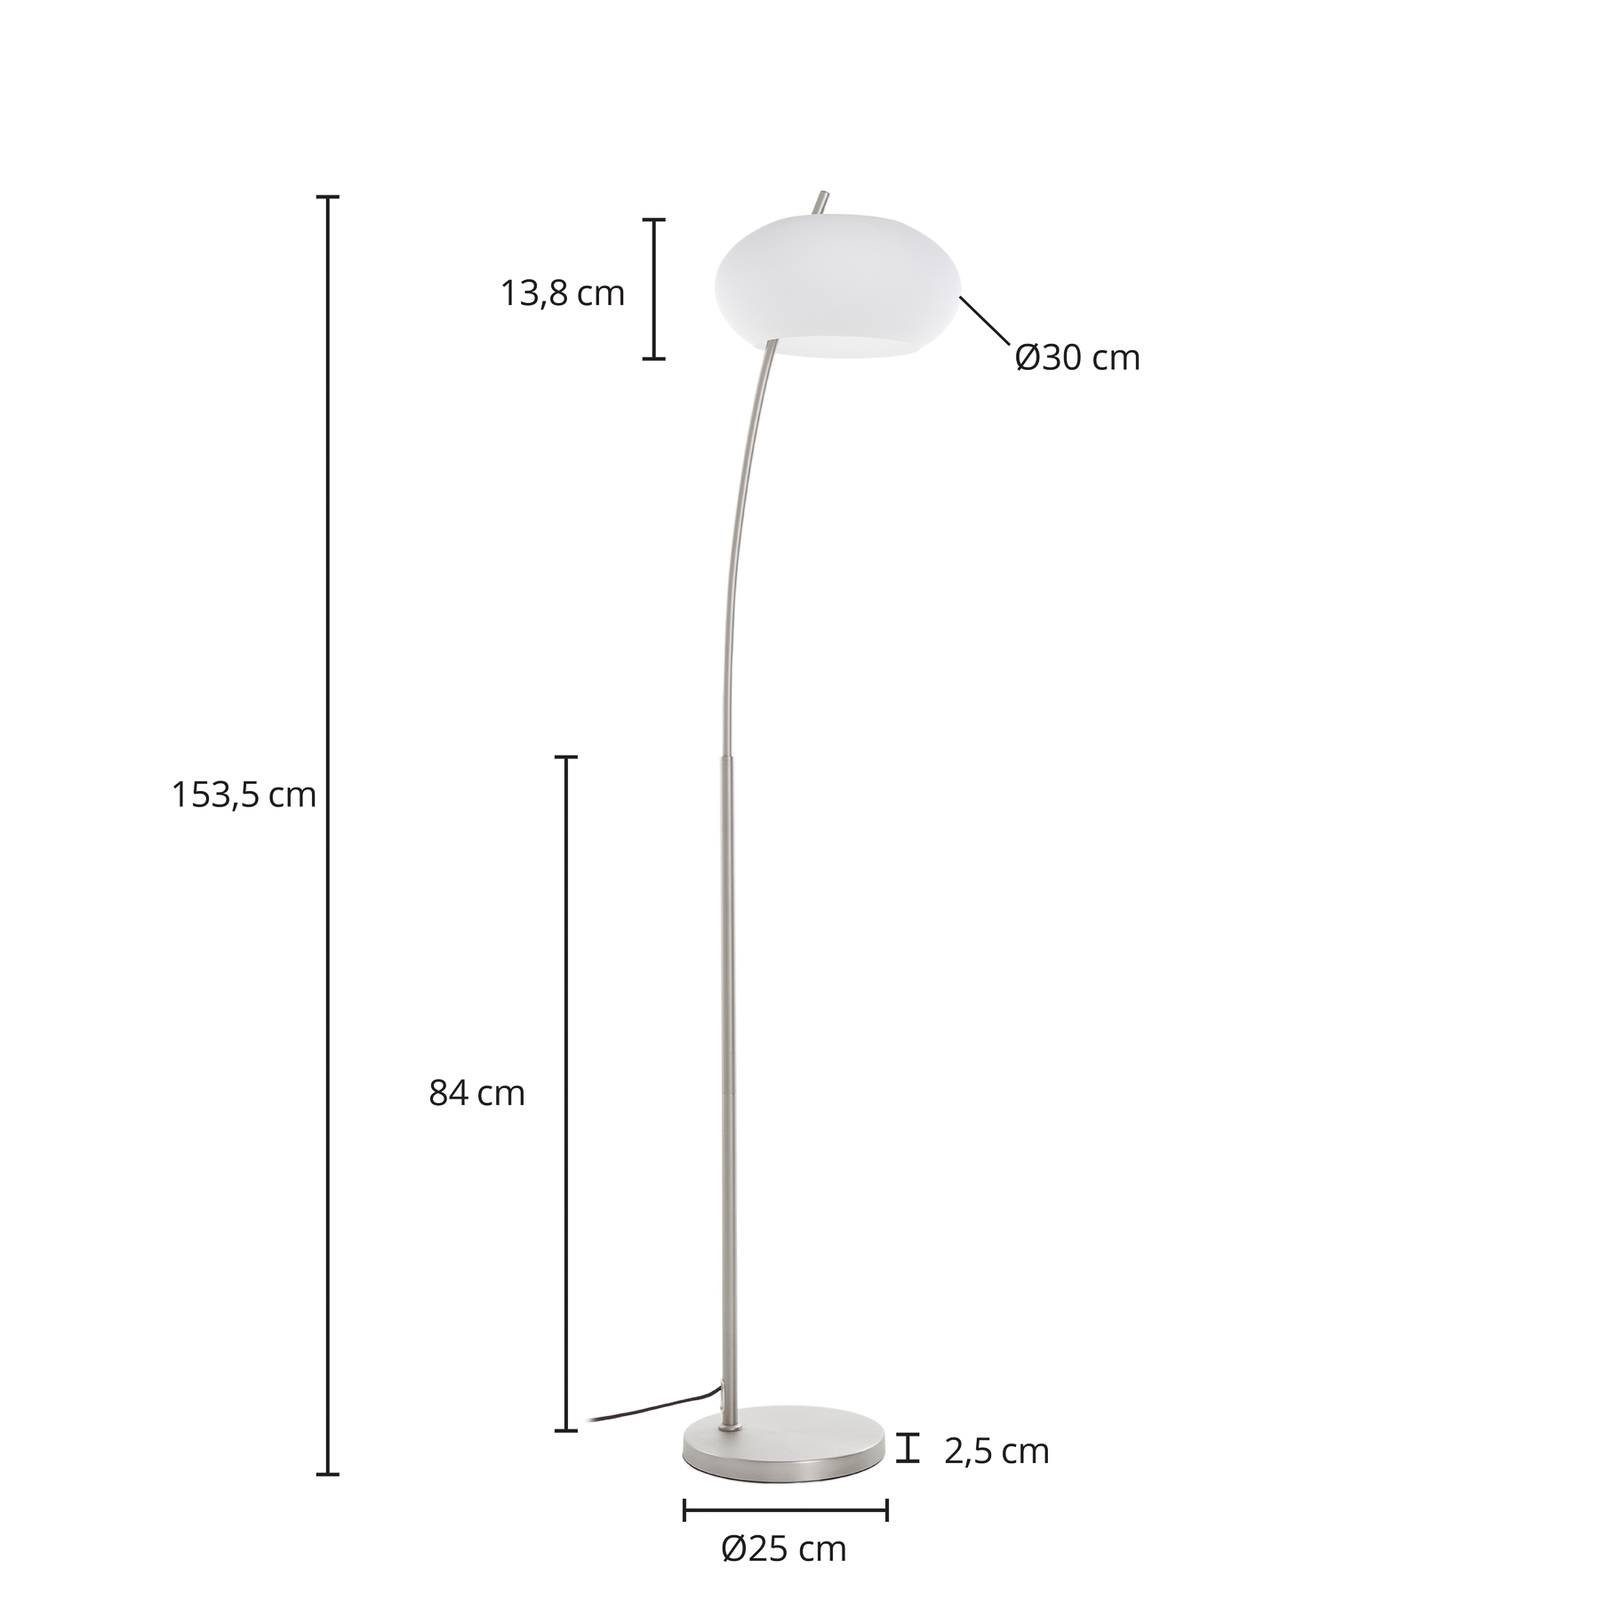 Lucande Stehlampe Sharvil, Leuchtmittel nicht inklusive, Design, Eisen, Glas, nickel matt, weiß, 1 flammig, E27, Design